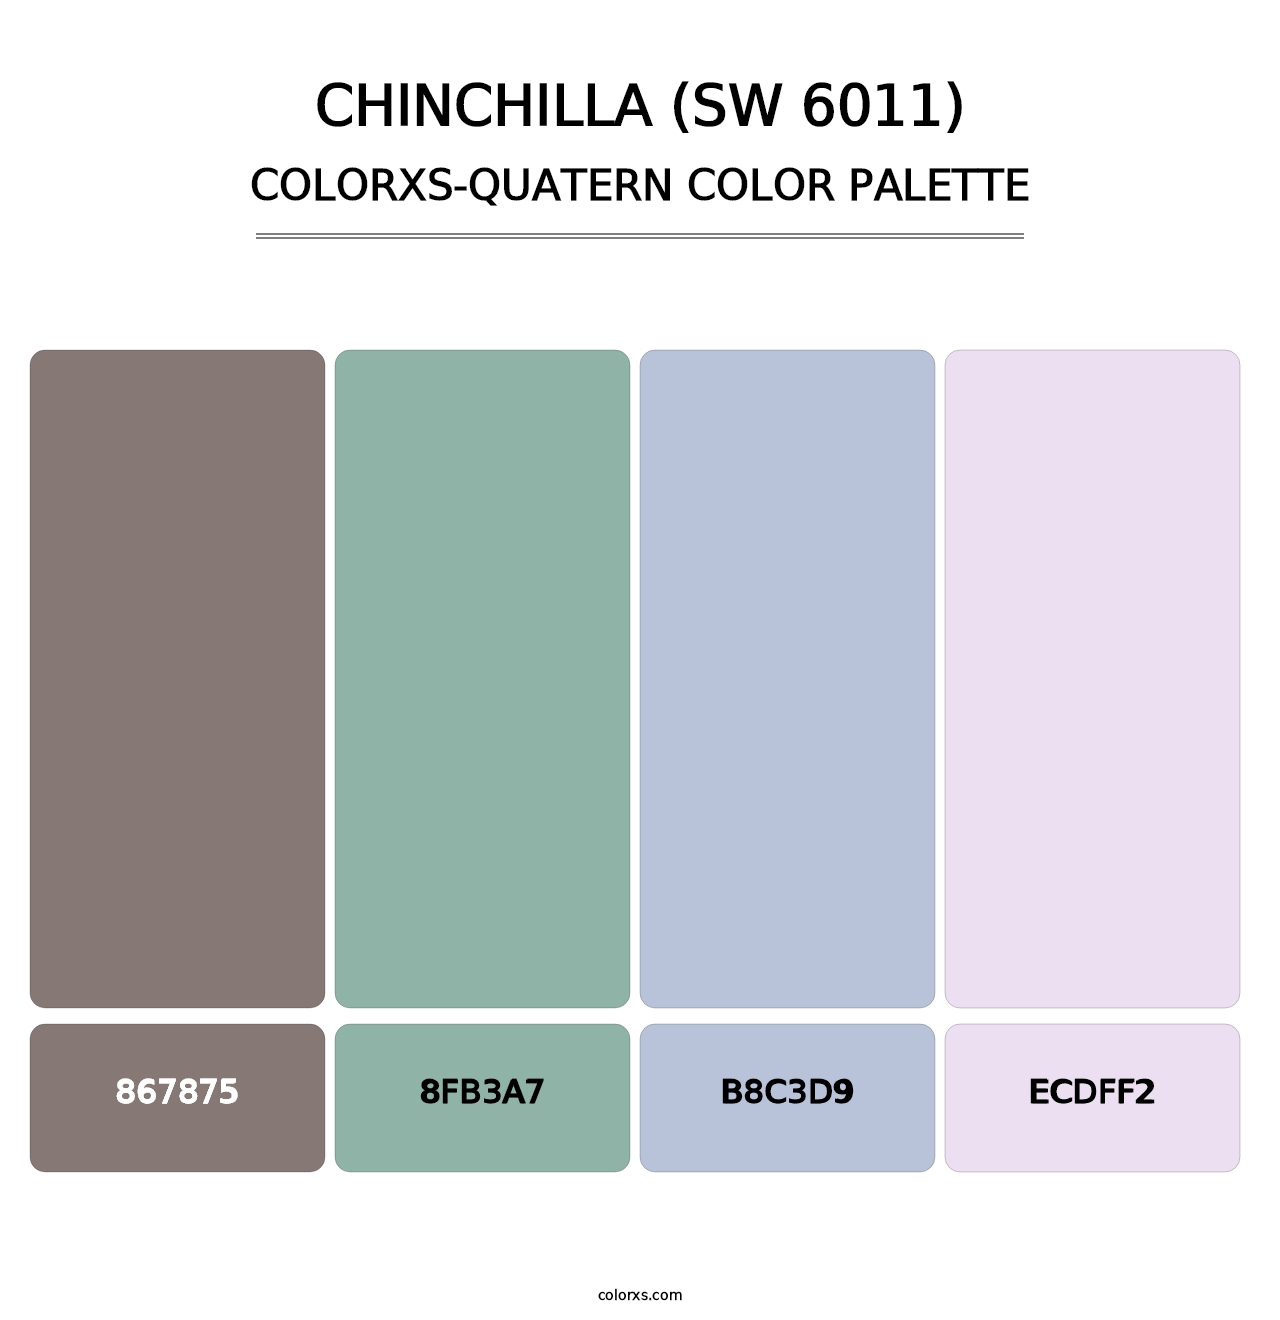 Chinchilla (SW 6011) - Colorxs Quatern Palette